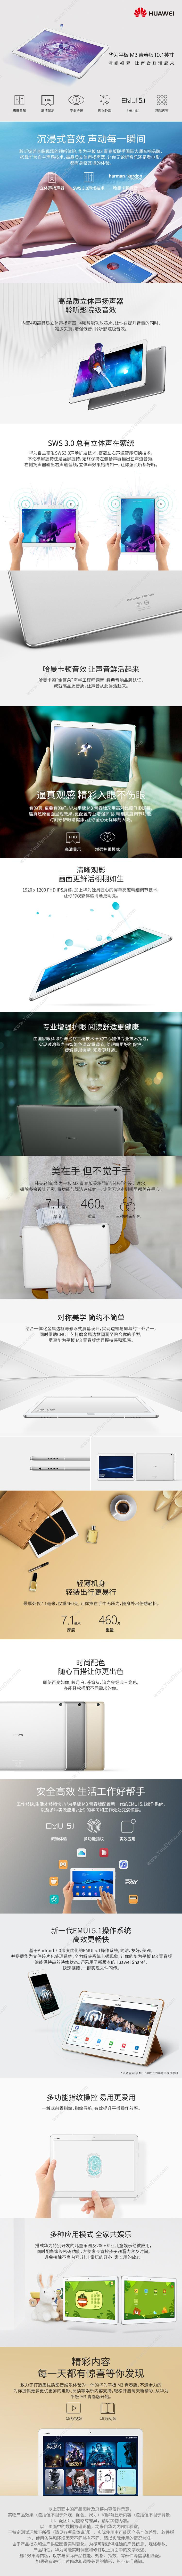 华为 Huawei BAH-AL00 M3青春版 10.1英寸 3G内存/32G存储 全网通 平板电脑